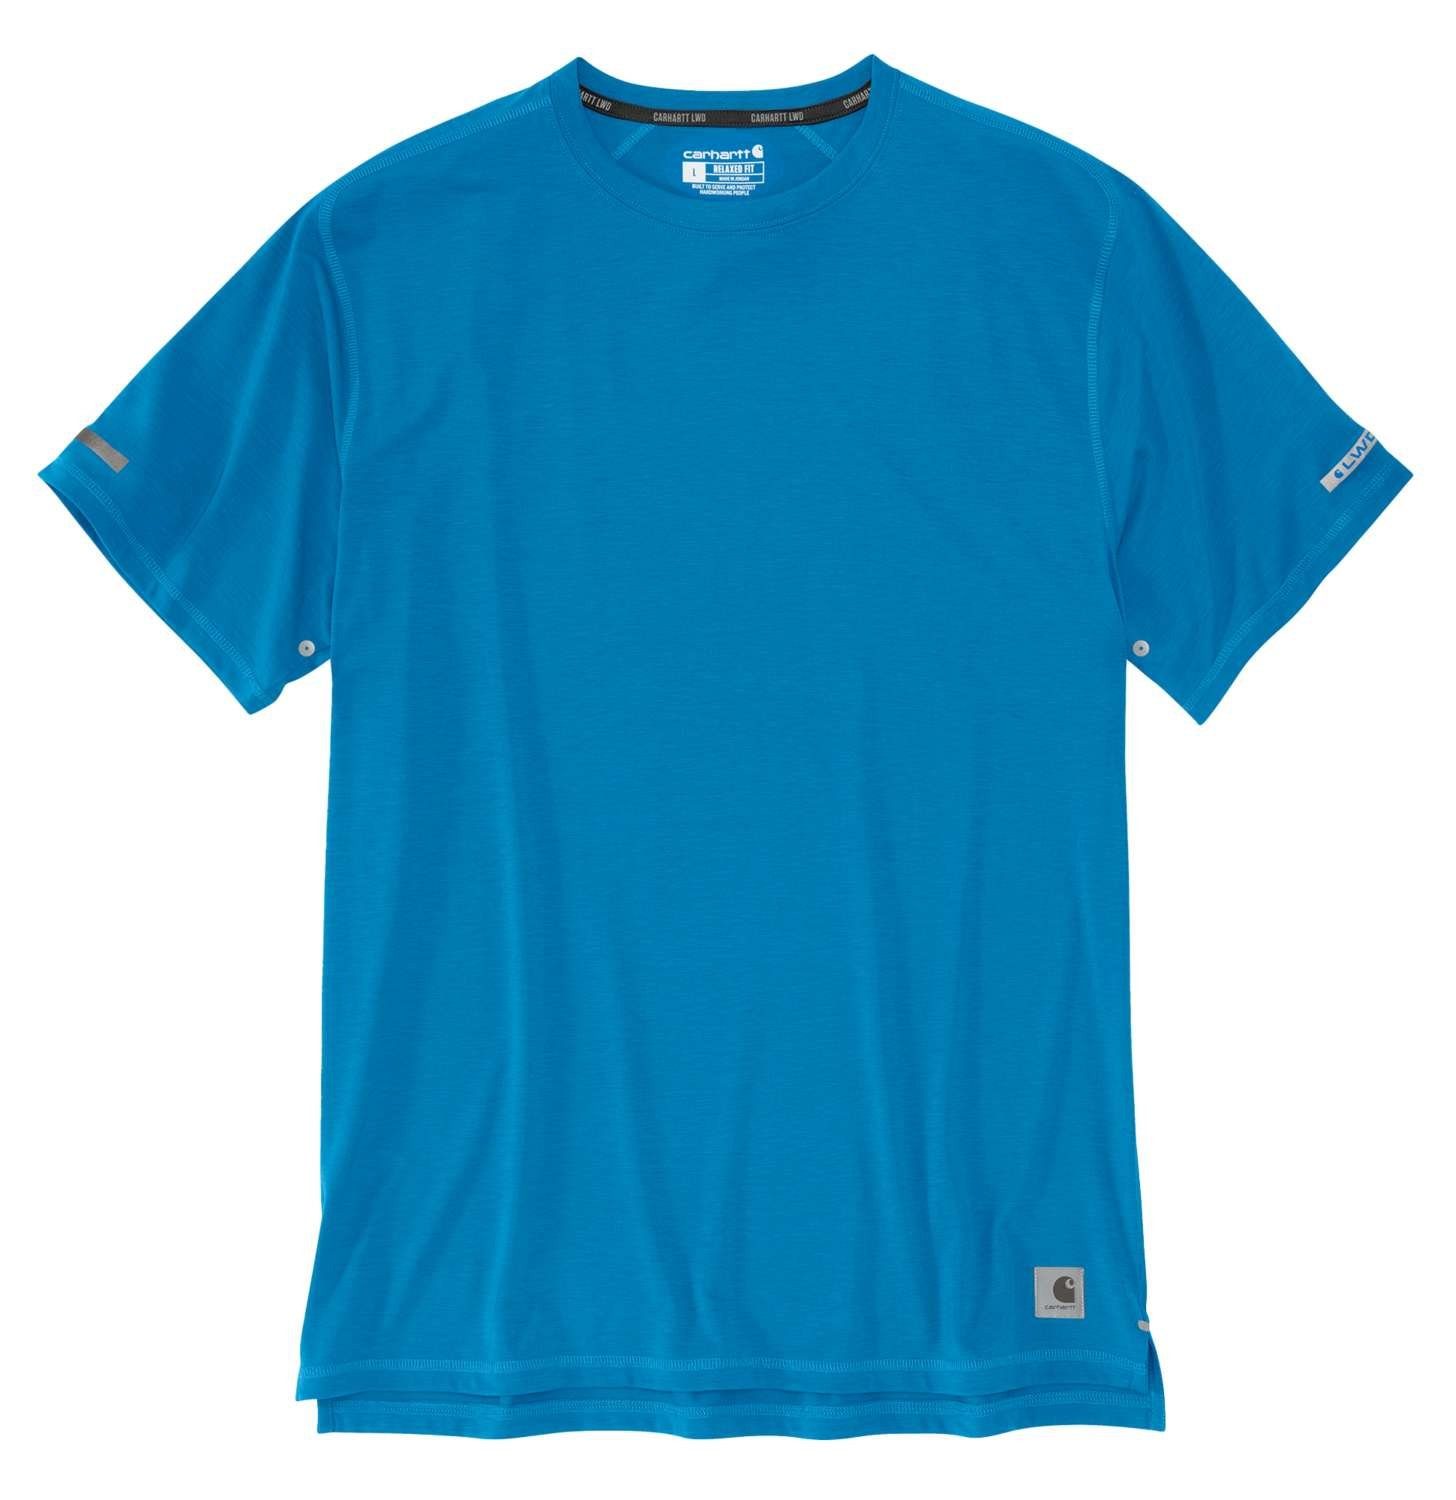 Carhartt T-Shirt Carhartt Herren Adult blue marine Extremes Fit T-Shirt Relaxed